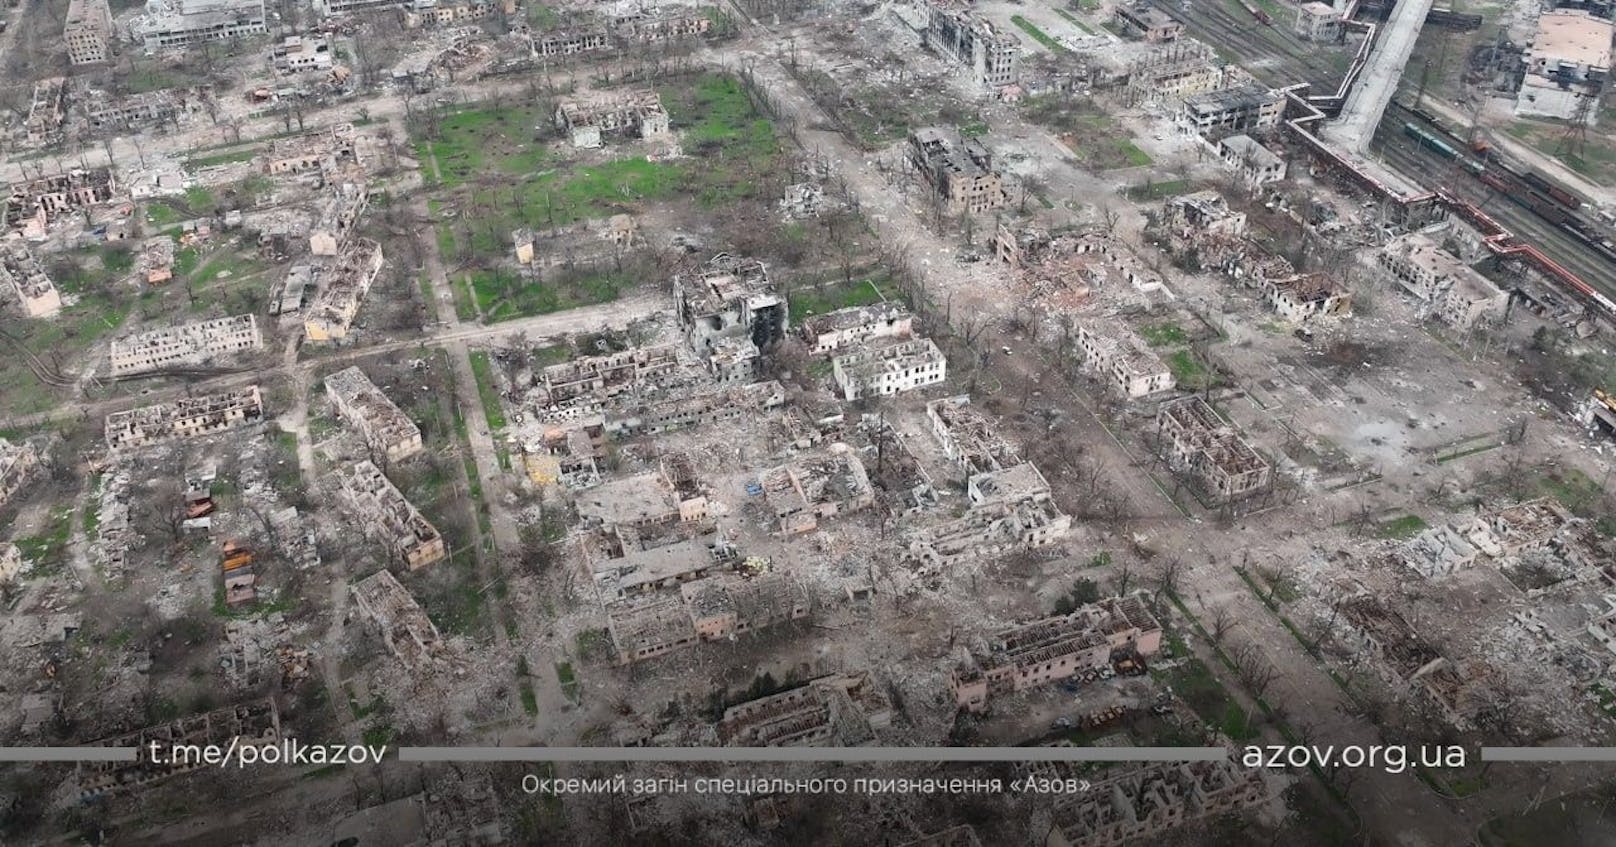 Alles zerstört: Neue Drohnen-Fotos zeigen die Trümmer von Mariupol, 24. April 2022.